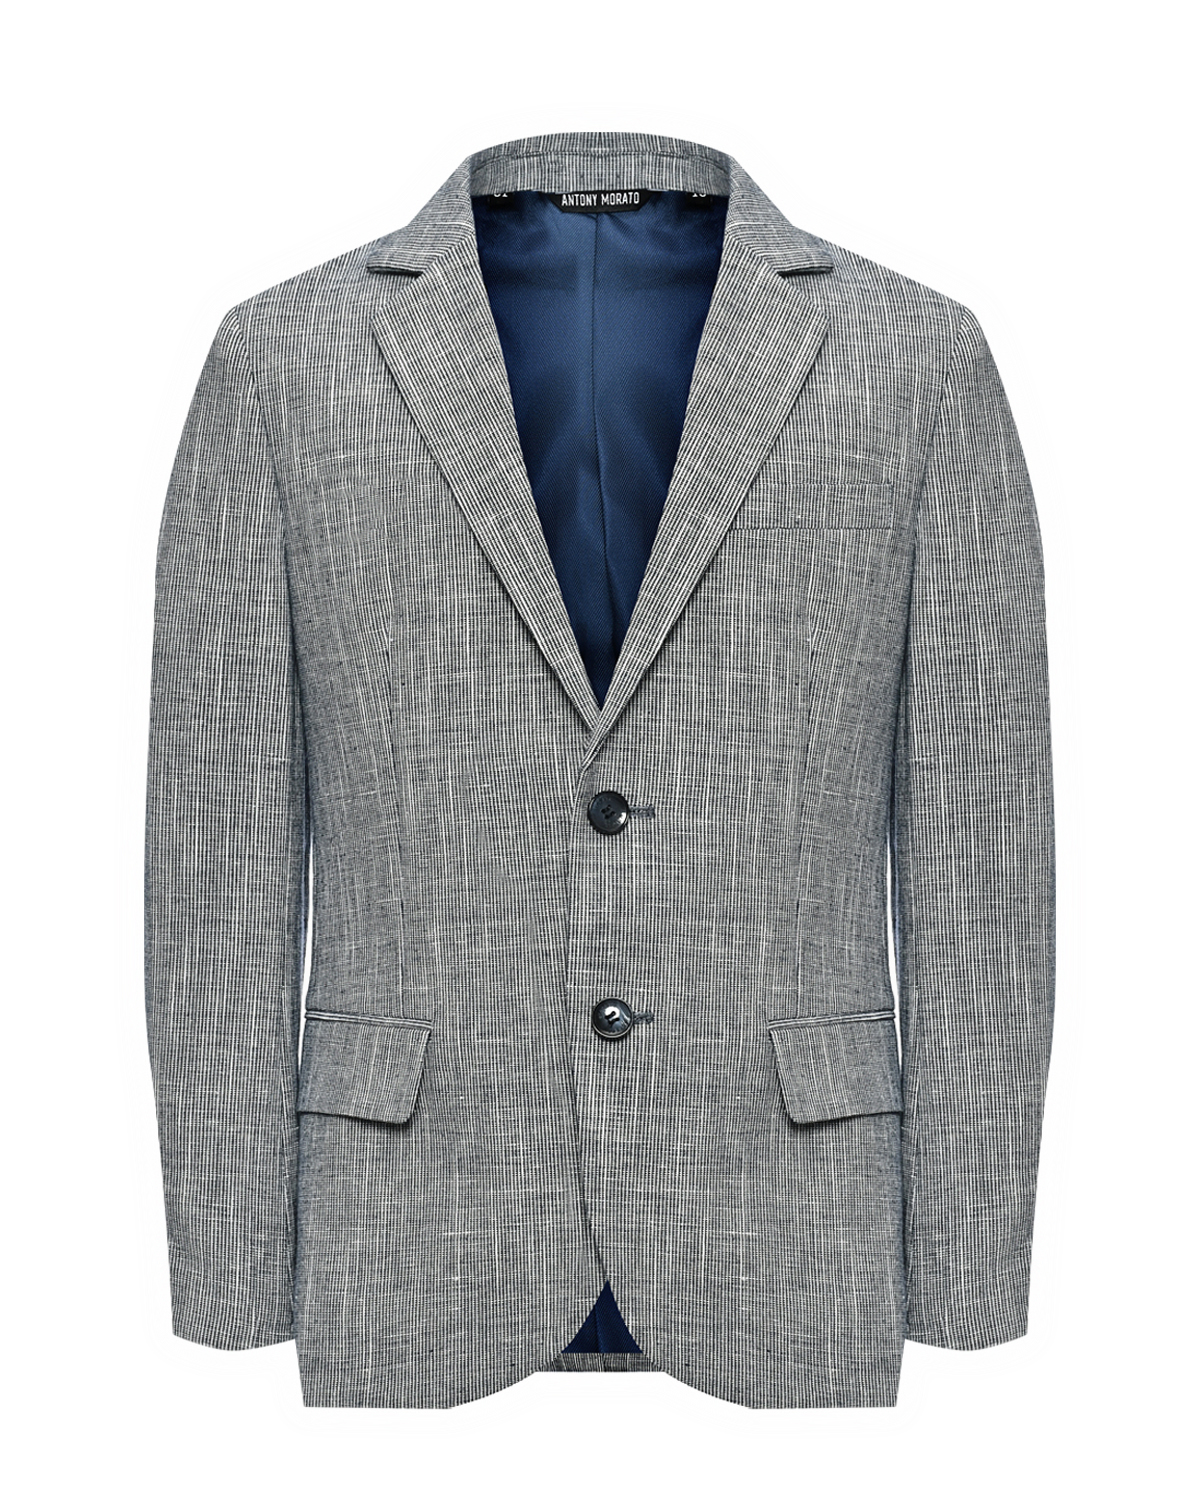 Пиджак однобортный серый, текстурная ткань Antony Morato пиджак однобортный серый текстурная ткань antony morato